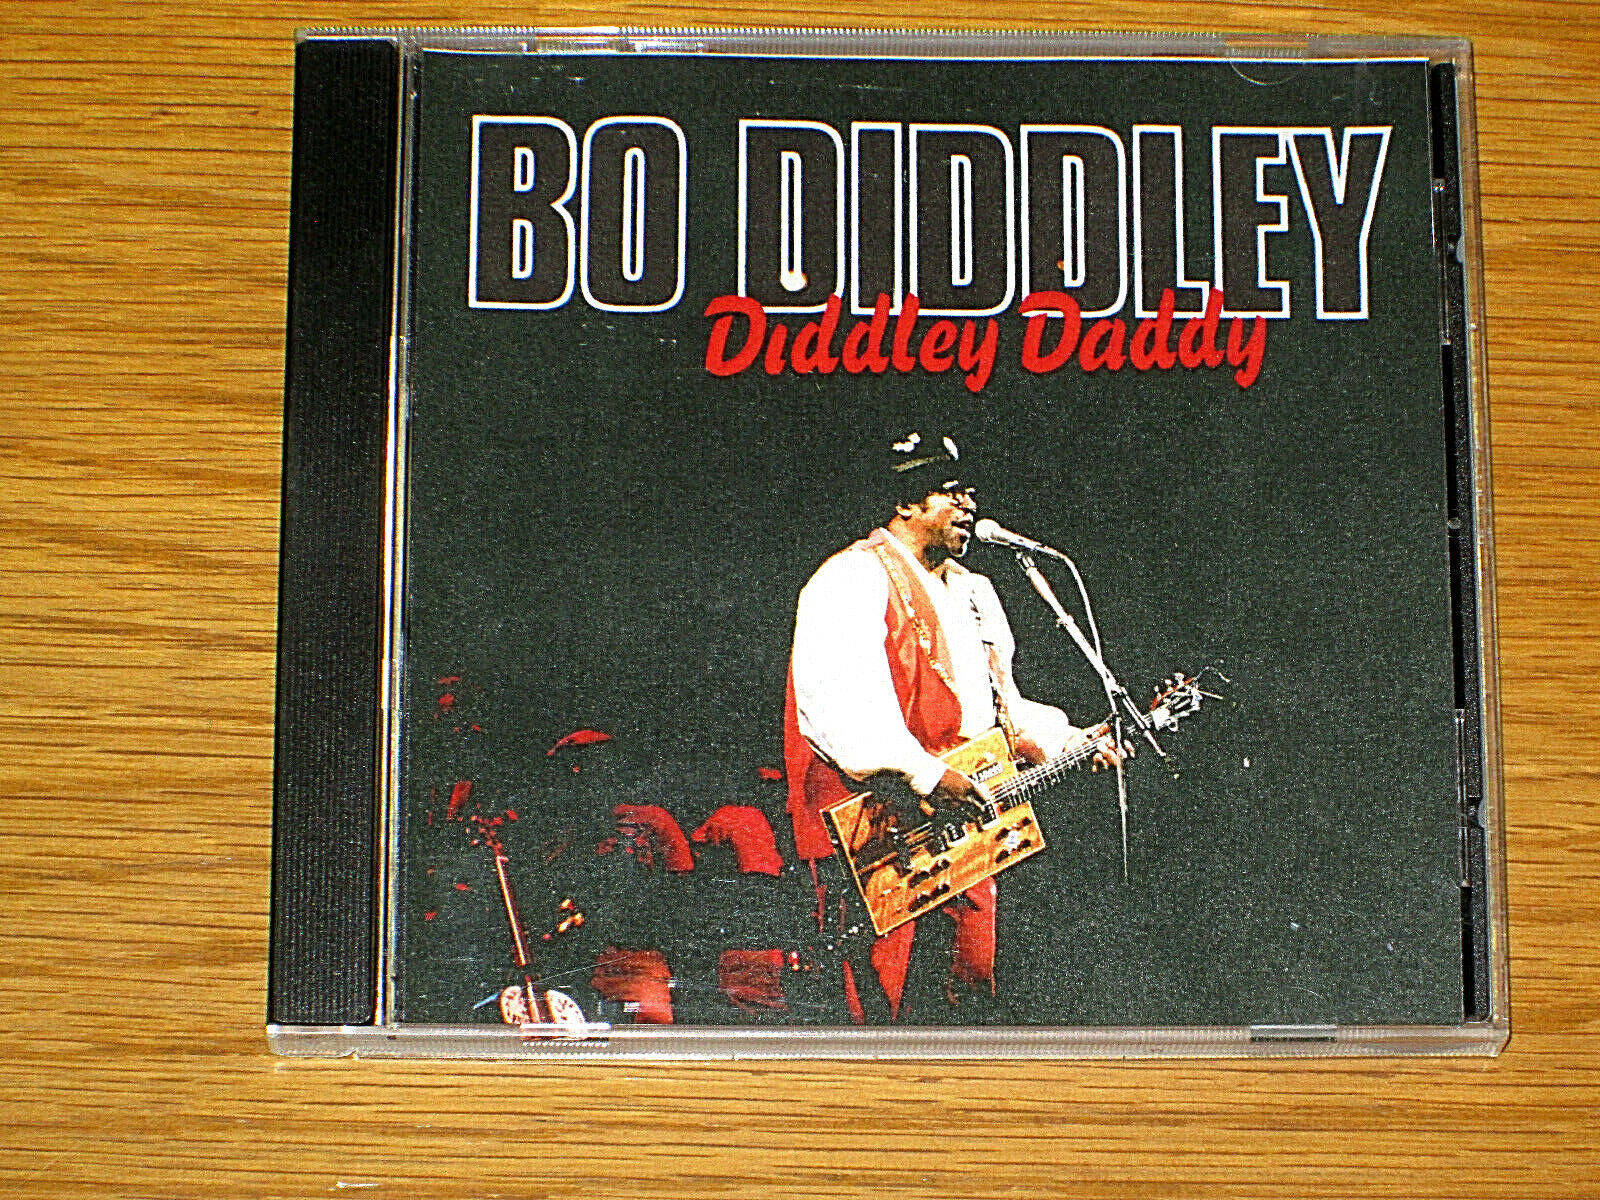 Diddley Daddy Cd Album Of Bo Diddley Wallpaper